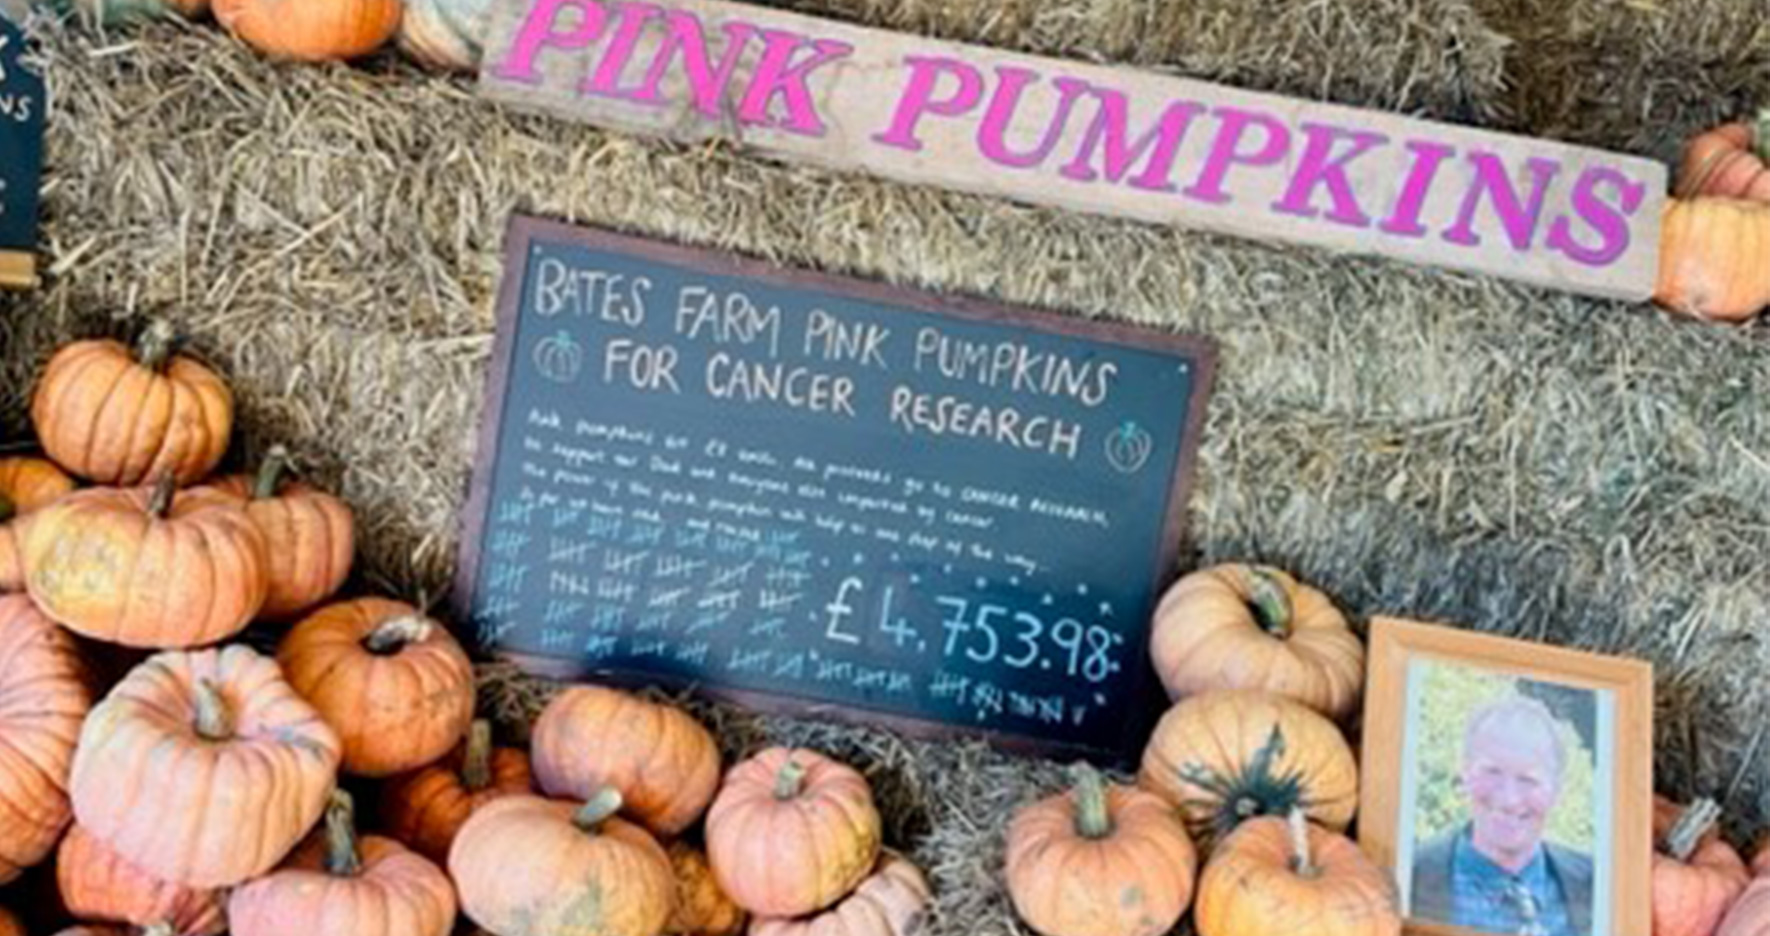 Pink pumpkins on display